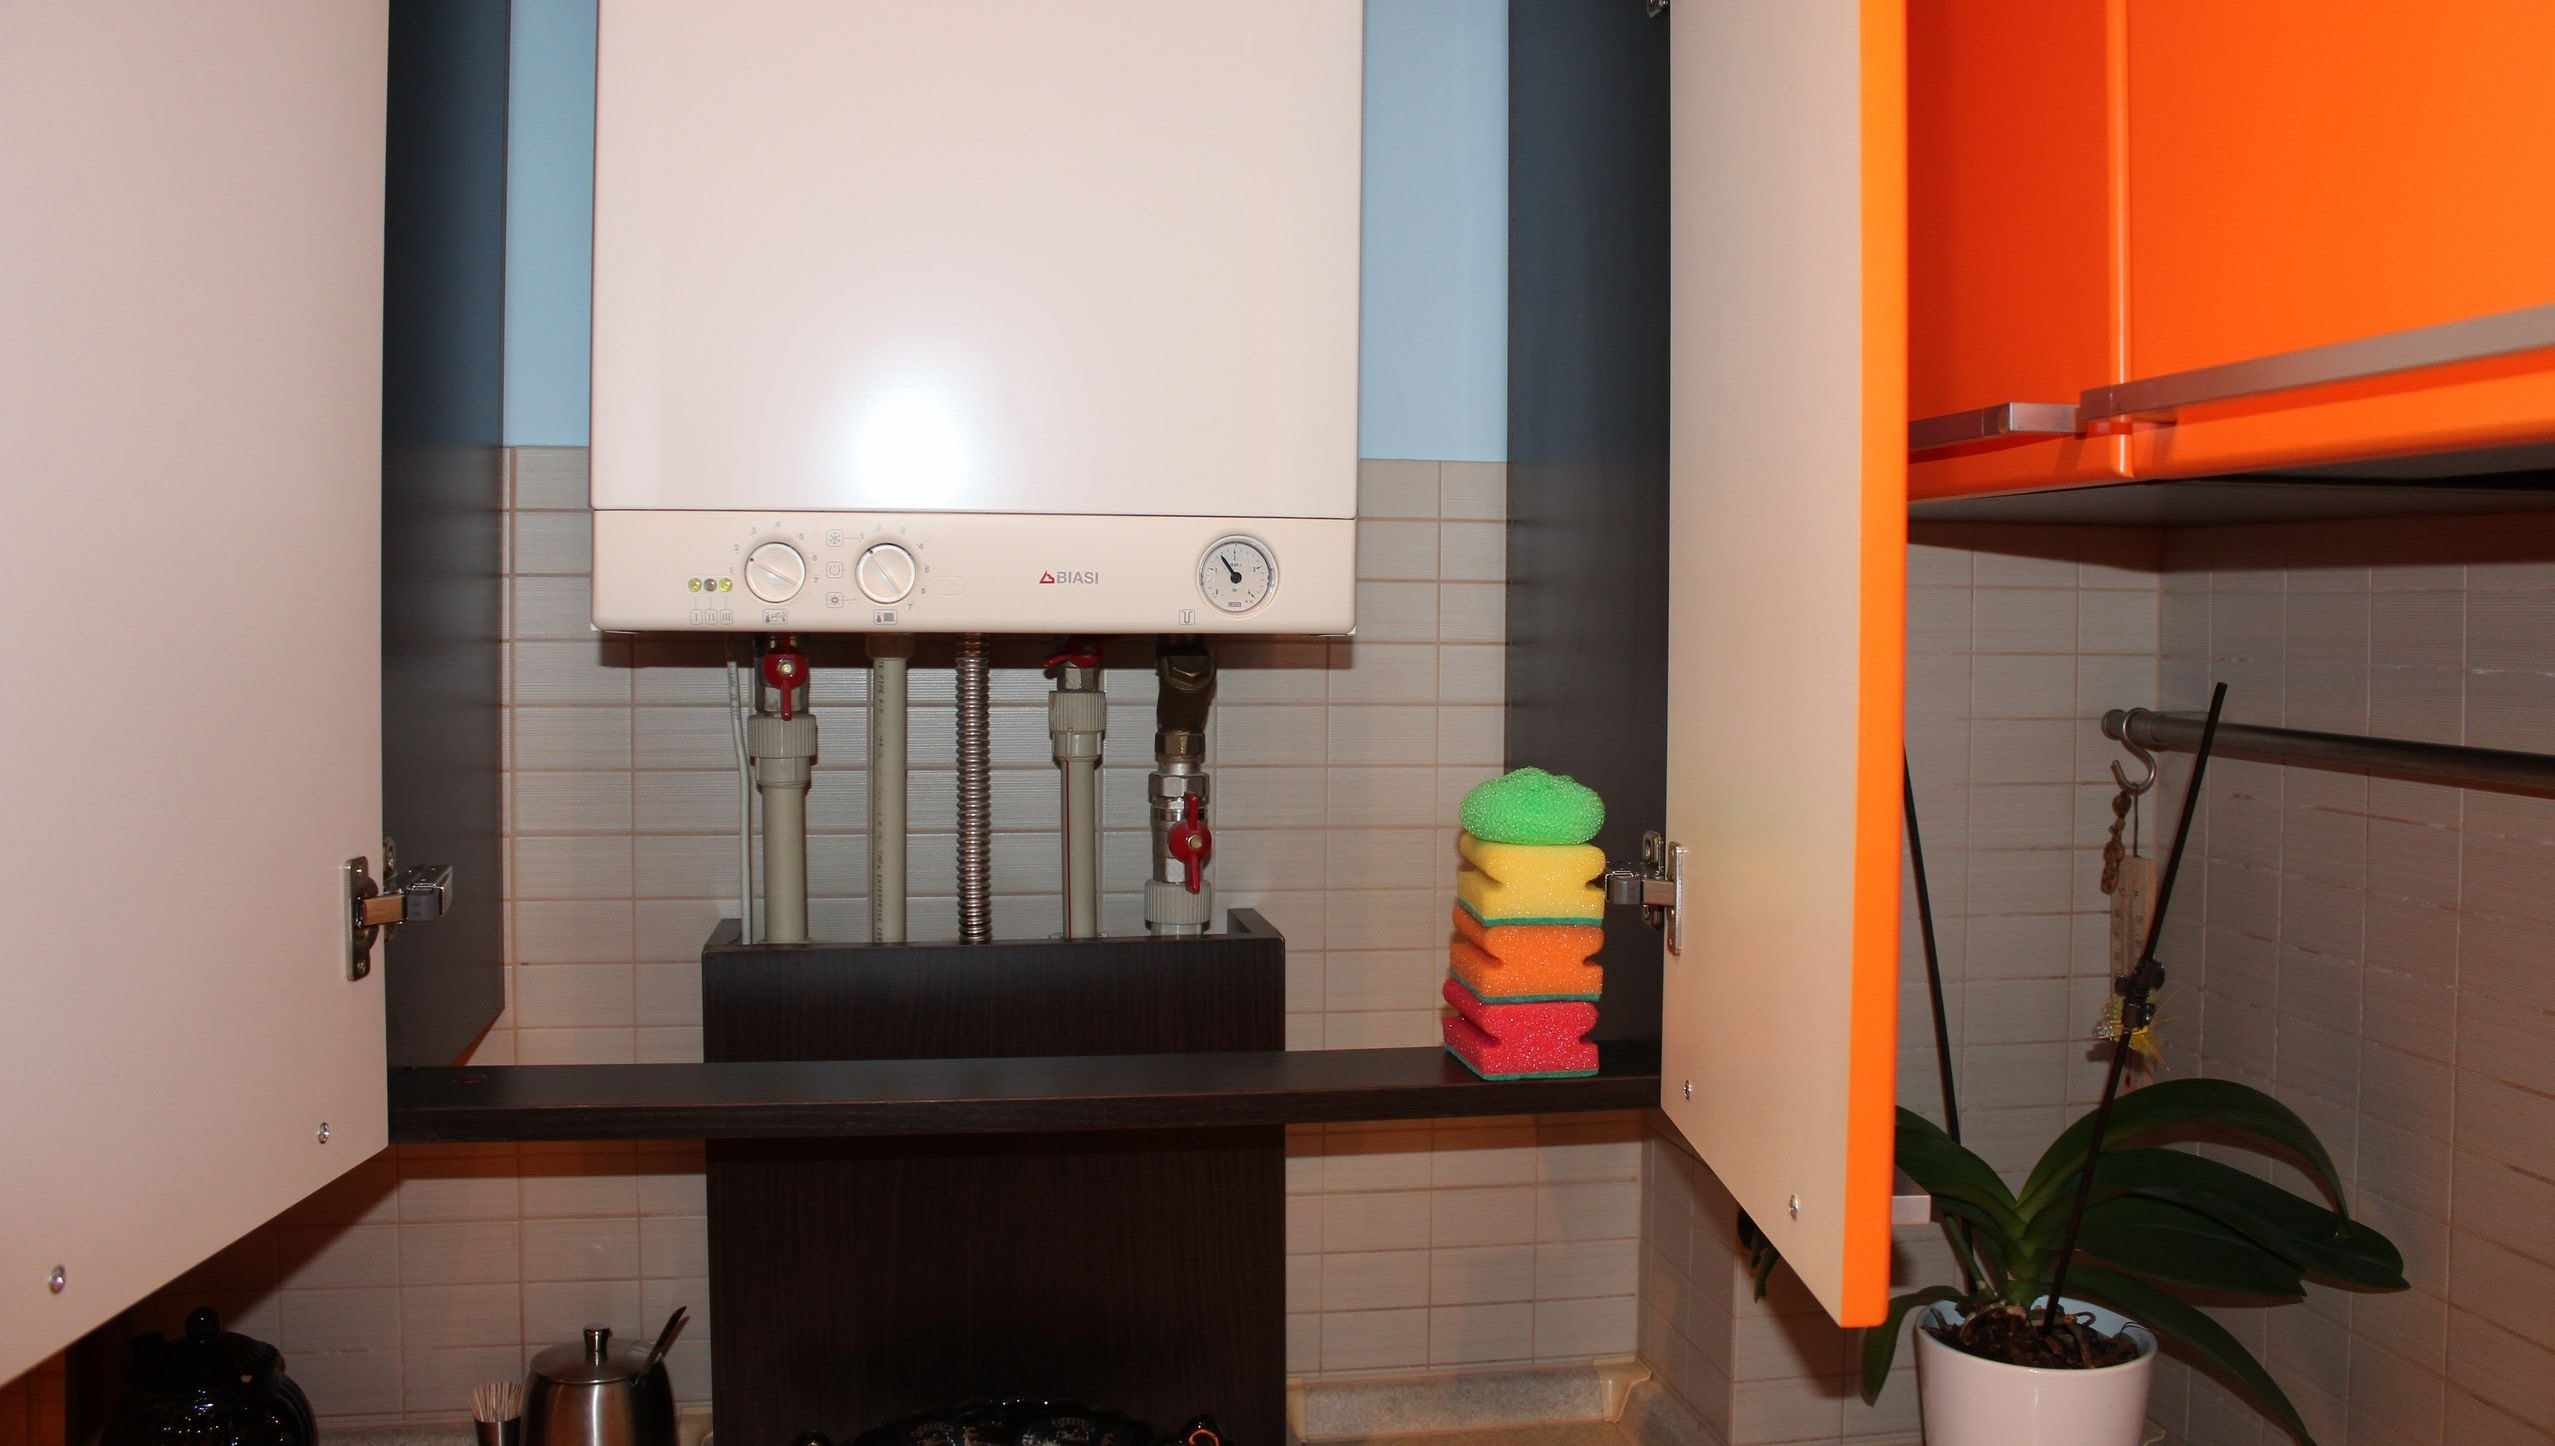 versão da decoração incomum da cozinha com uma caldeira a gás